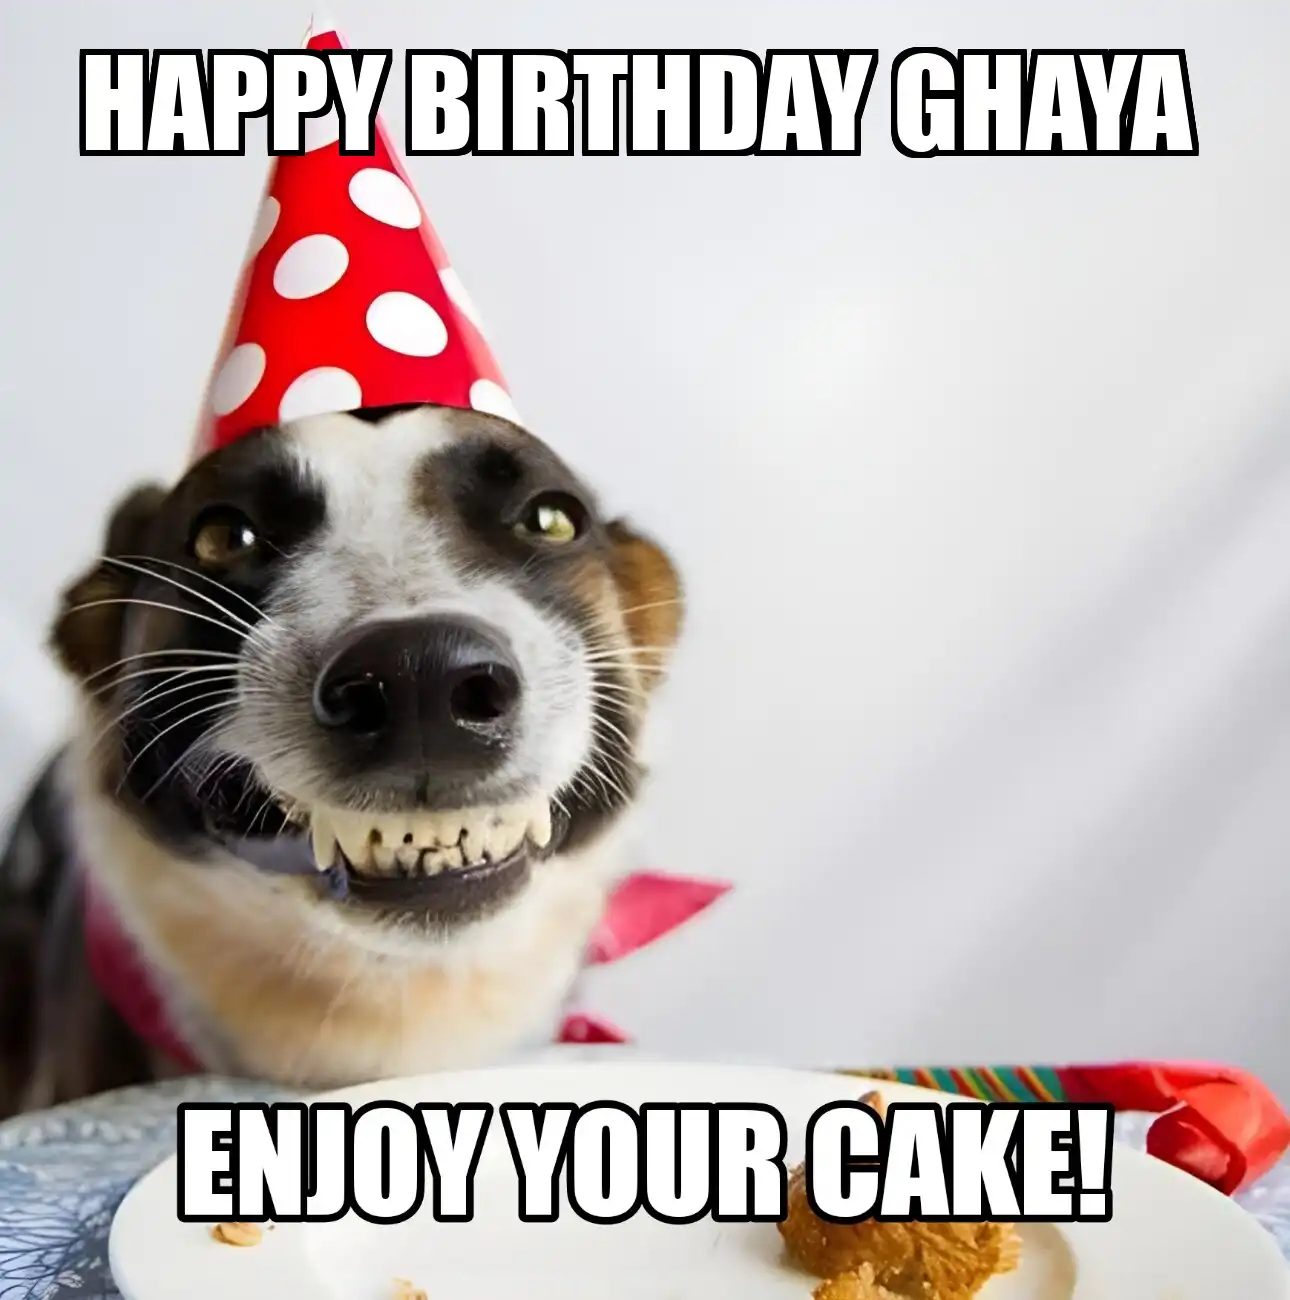 Happy Birthday Ghaya Enjoy Your Cake Dog Meme